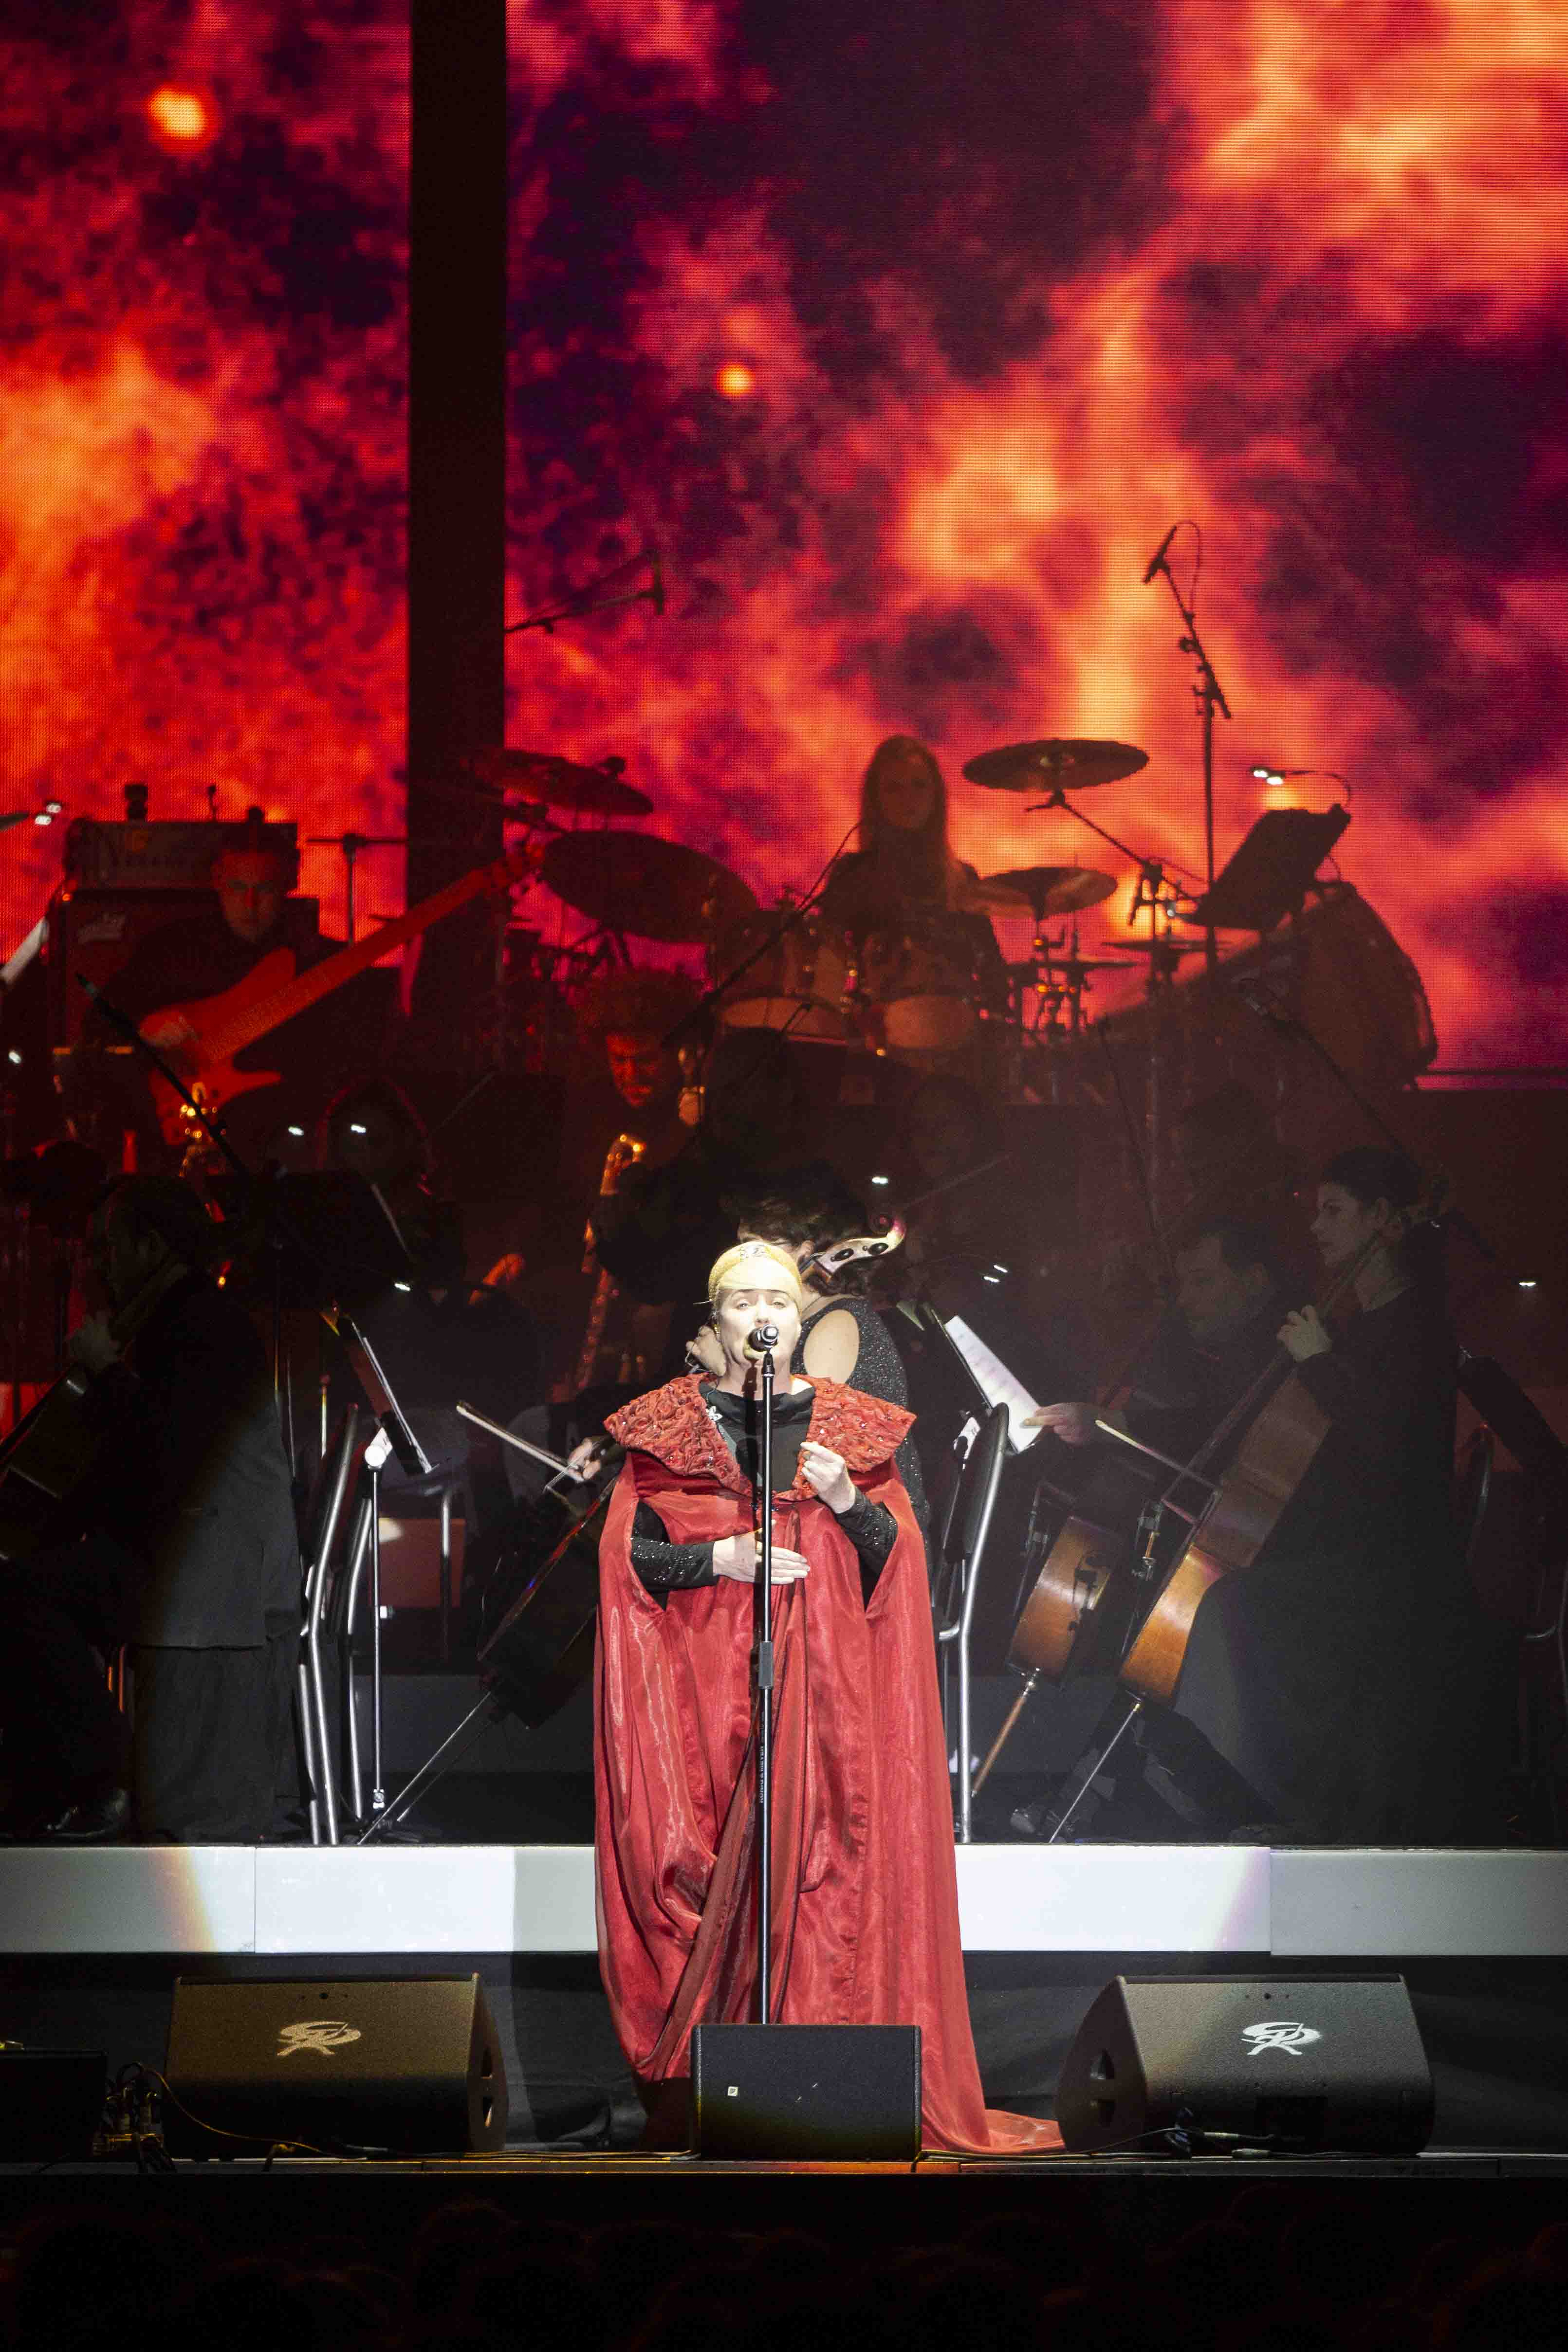 Adele si podmanila Brit Awards. Stala se Umělkyní roku, skórovala i s albem a písní